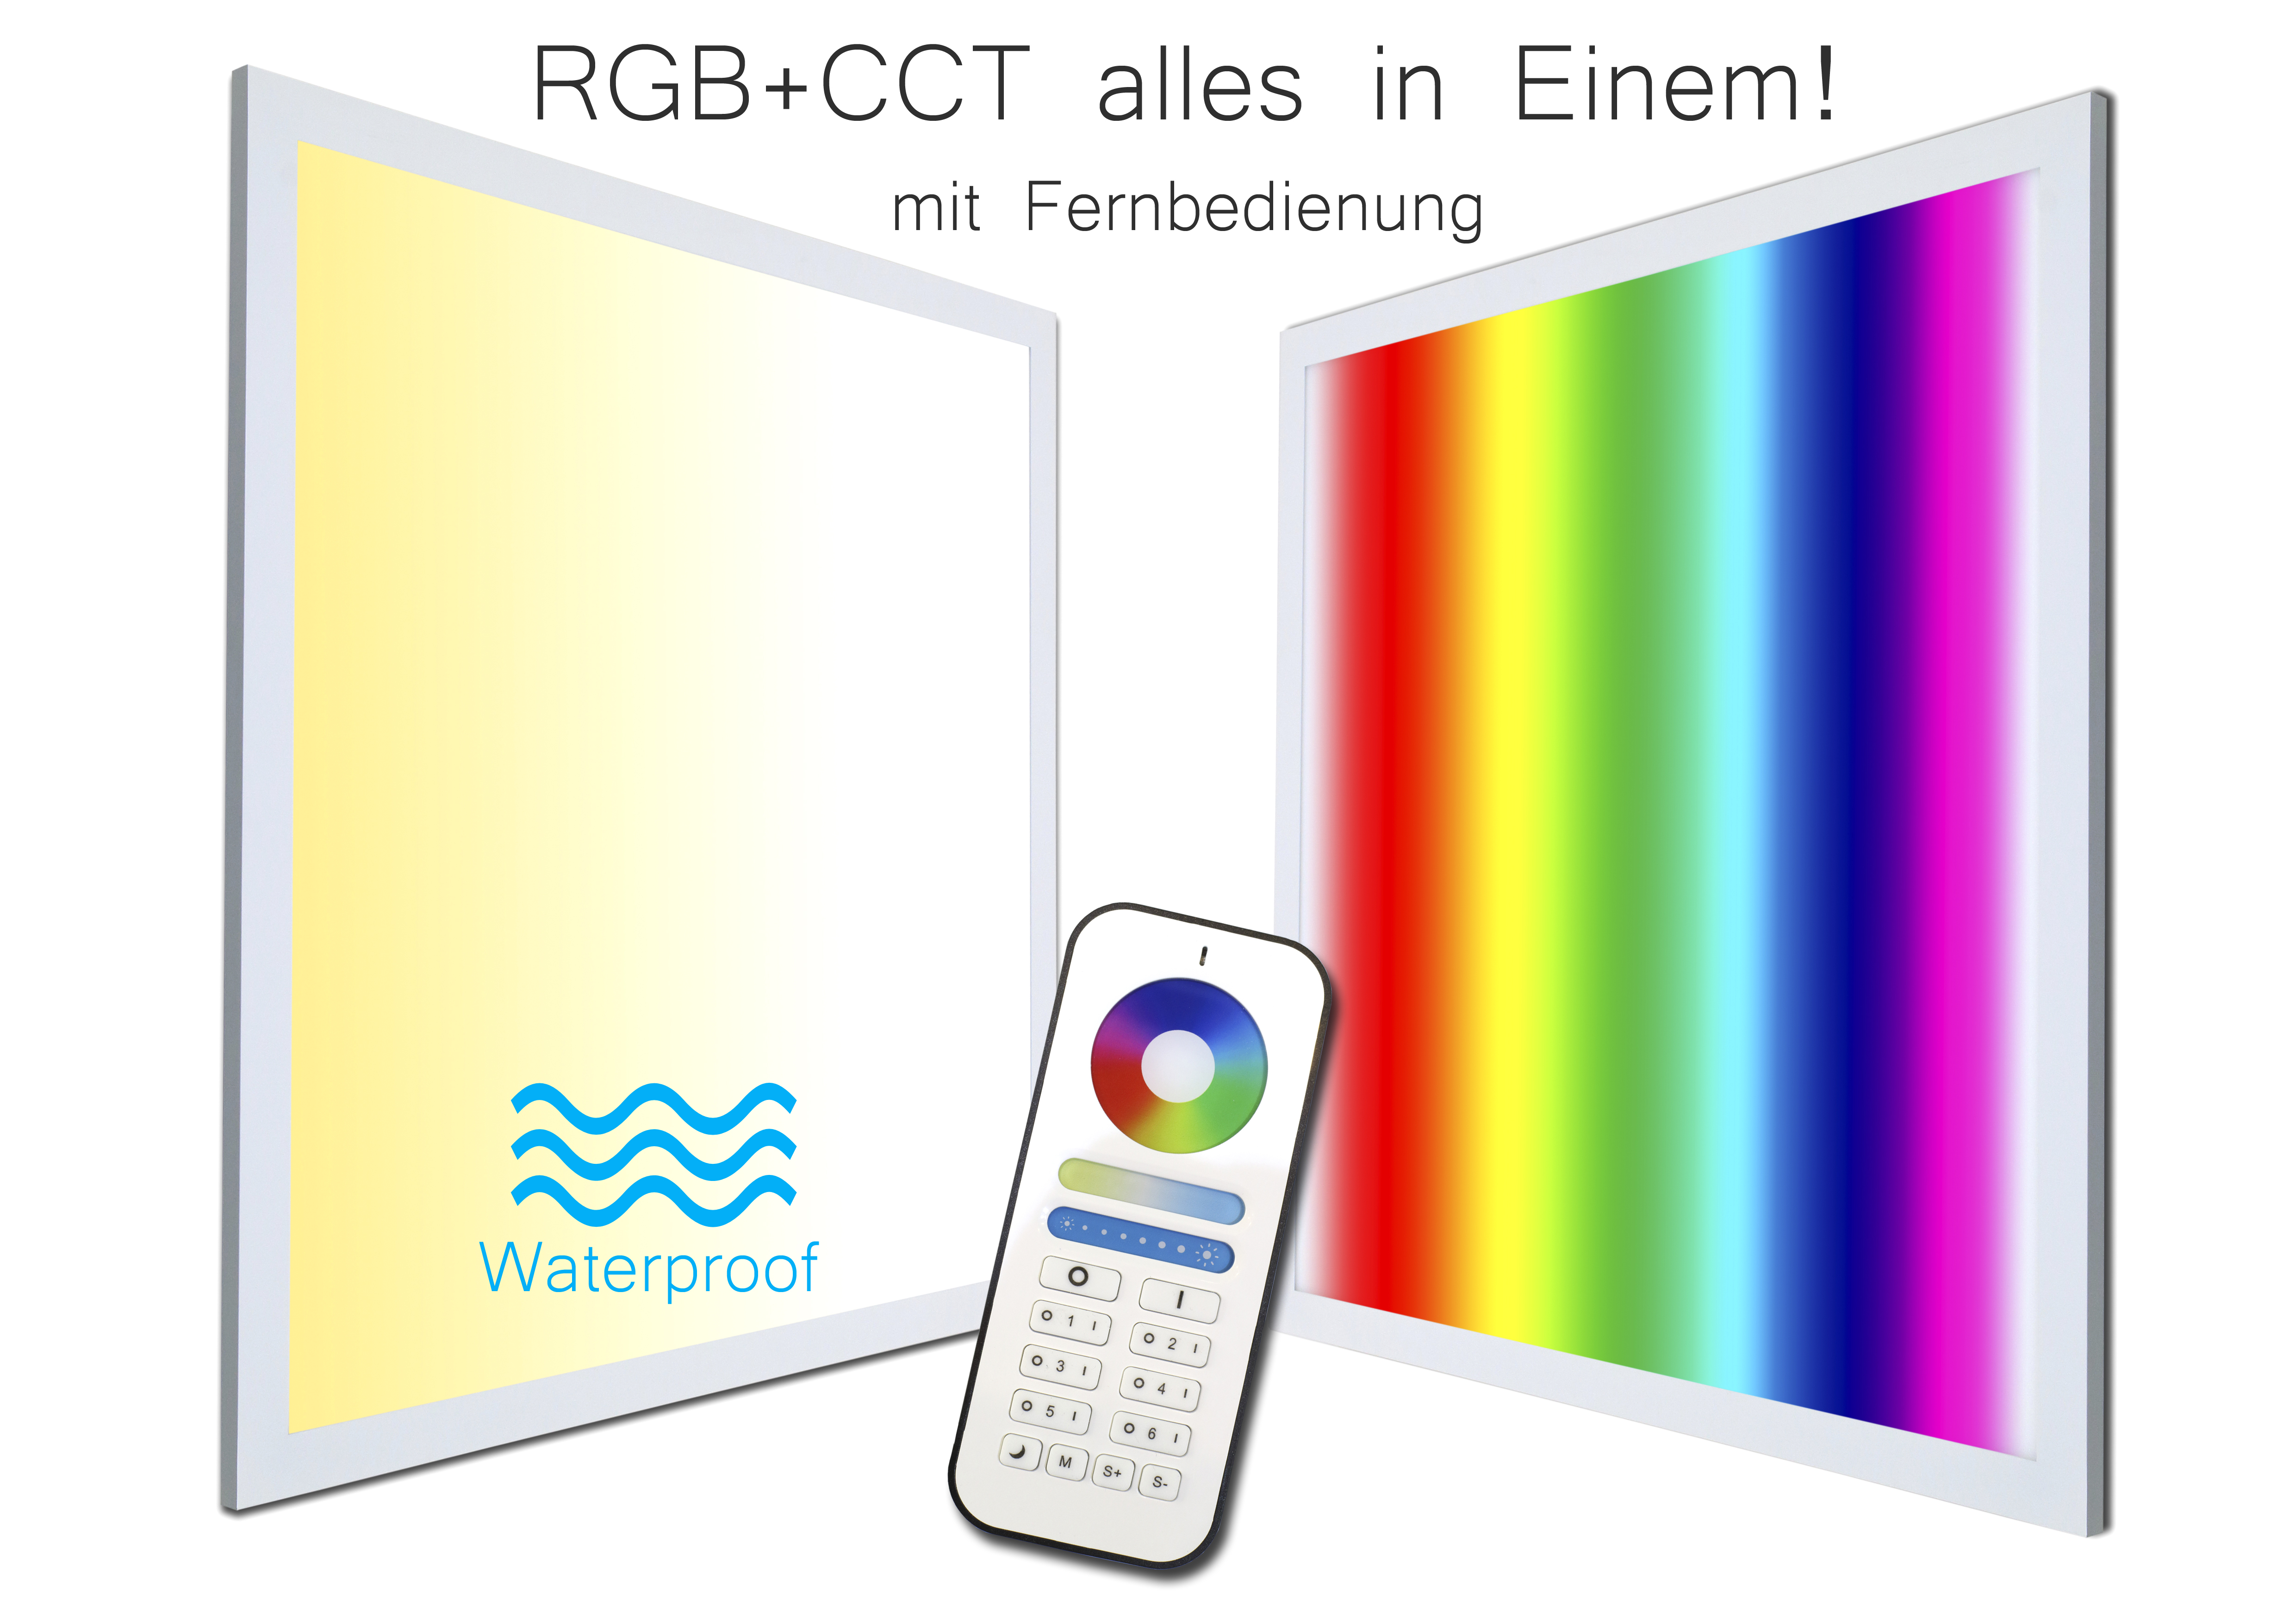 dimmbar RGB mit Panel + und RGB alle 60x60 Fernbedienung IP65 Watt TXL24 CCT - Farben 36 flimmerfrei LED WhiteRainbowplus